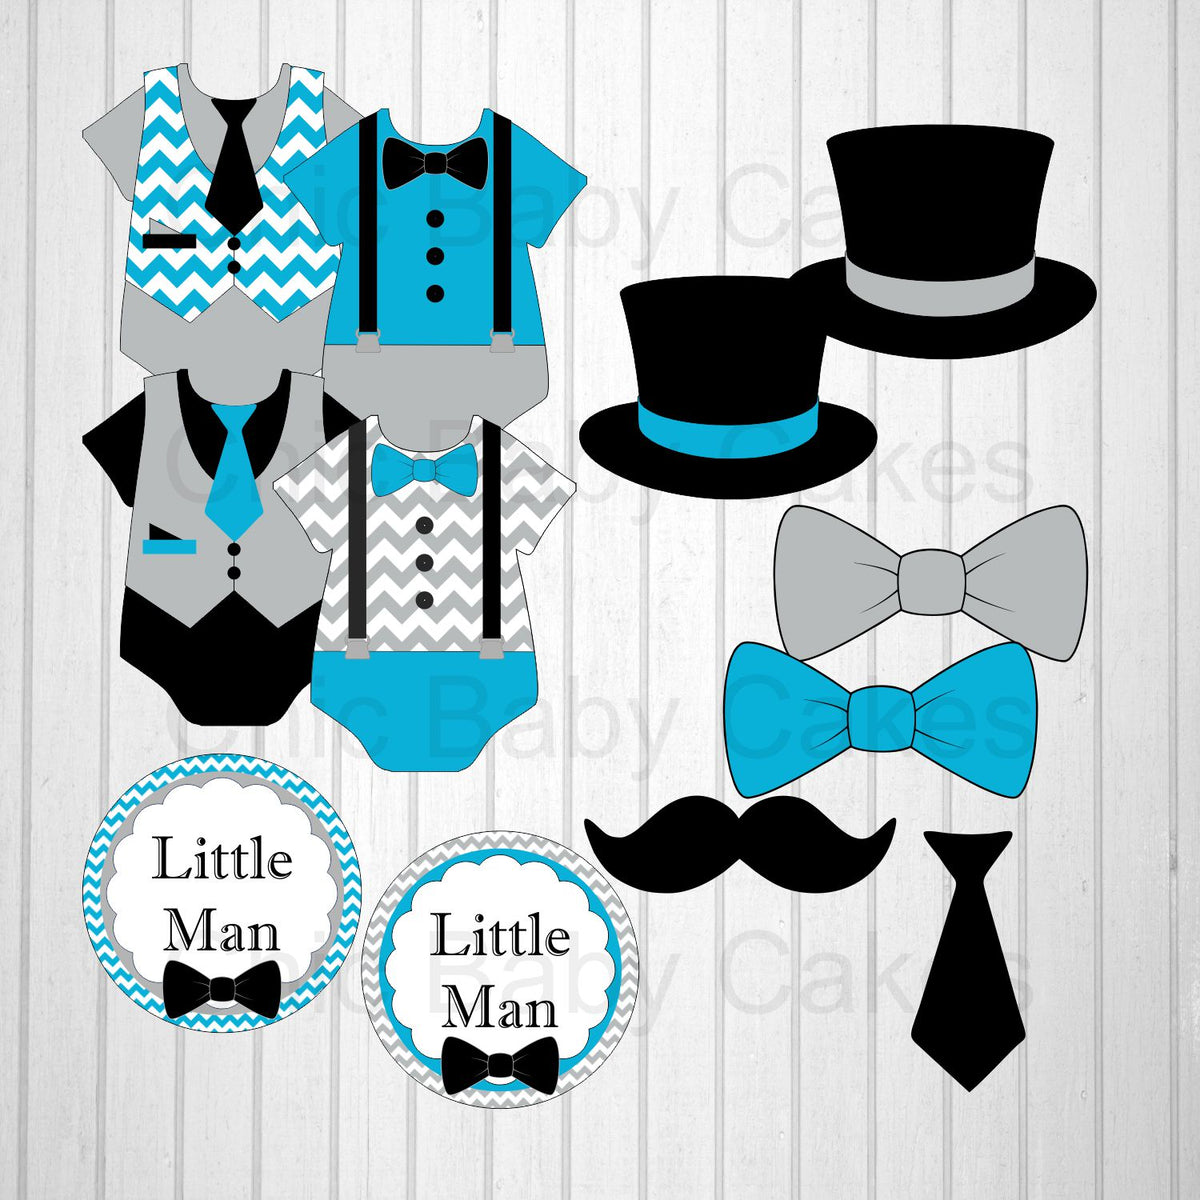 Last little man. Little men. Little man (little man) игра. Little man (little man) / маленький человек. Little man русская версия.